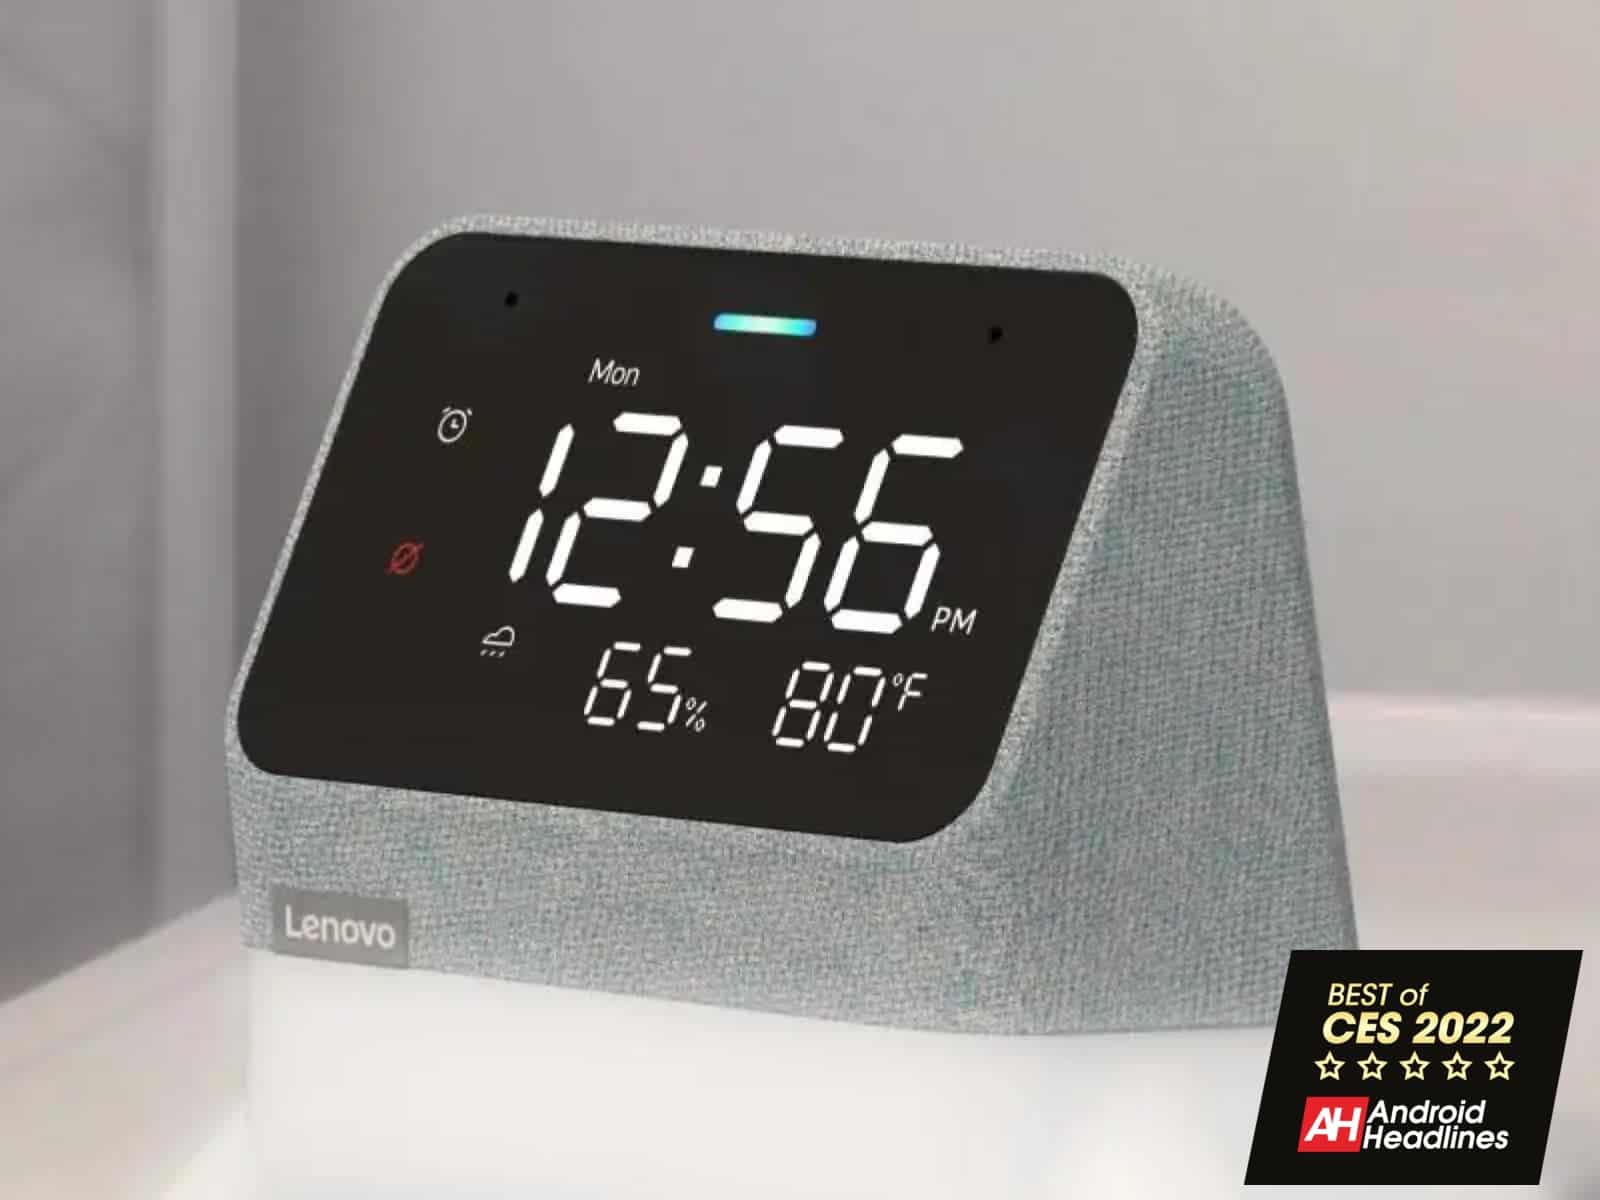 Lo mejor de CES 2022: Lenovo Smart Clock Essential con Alexa incorporado